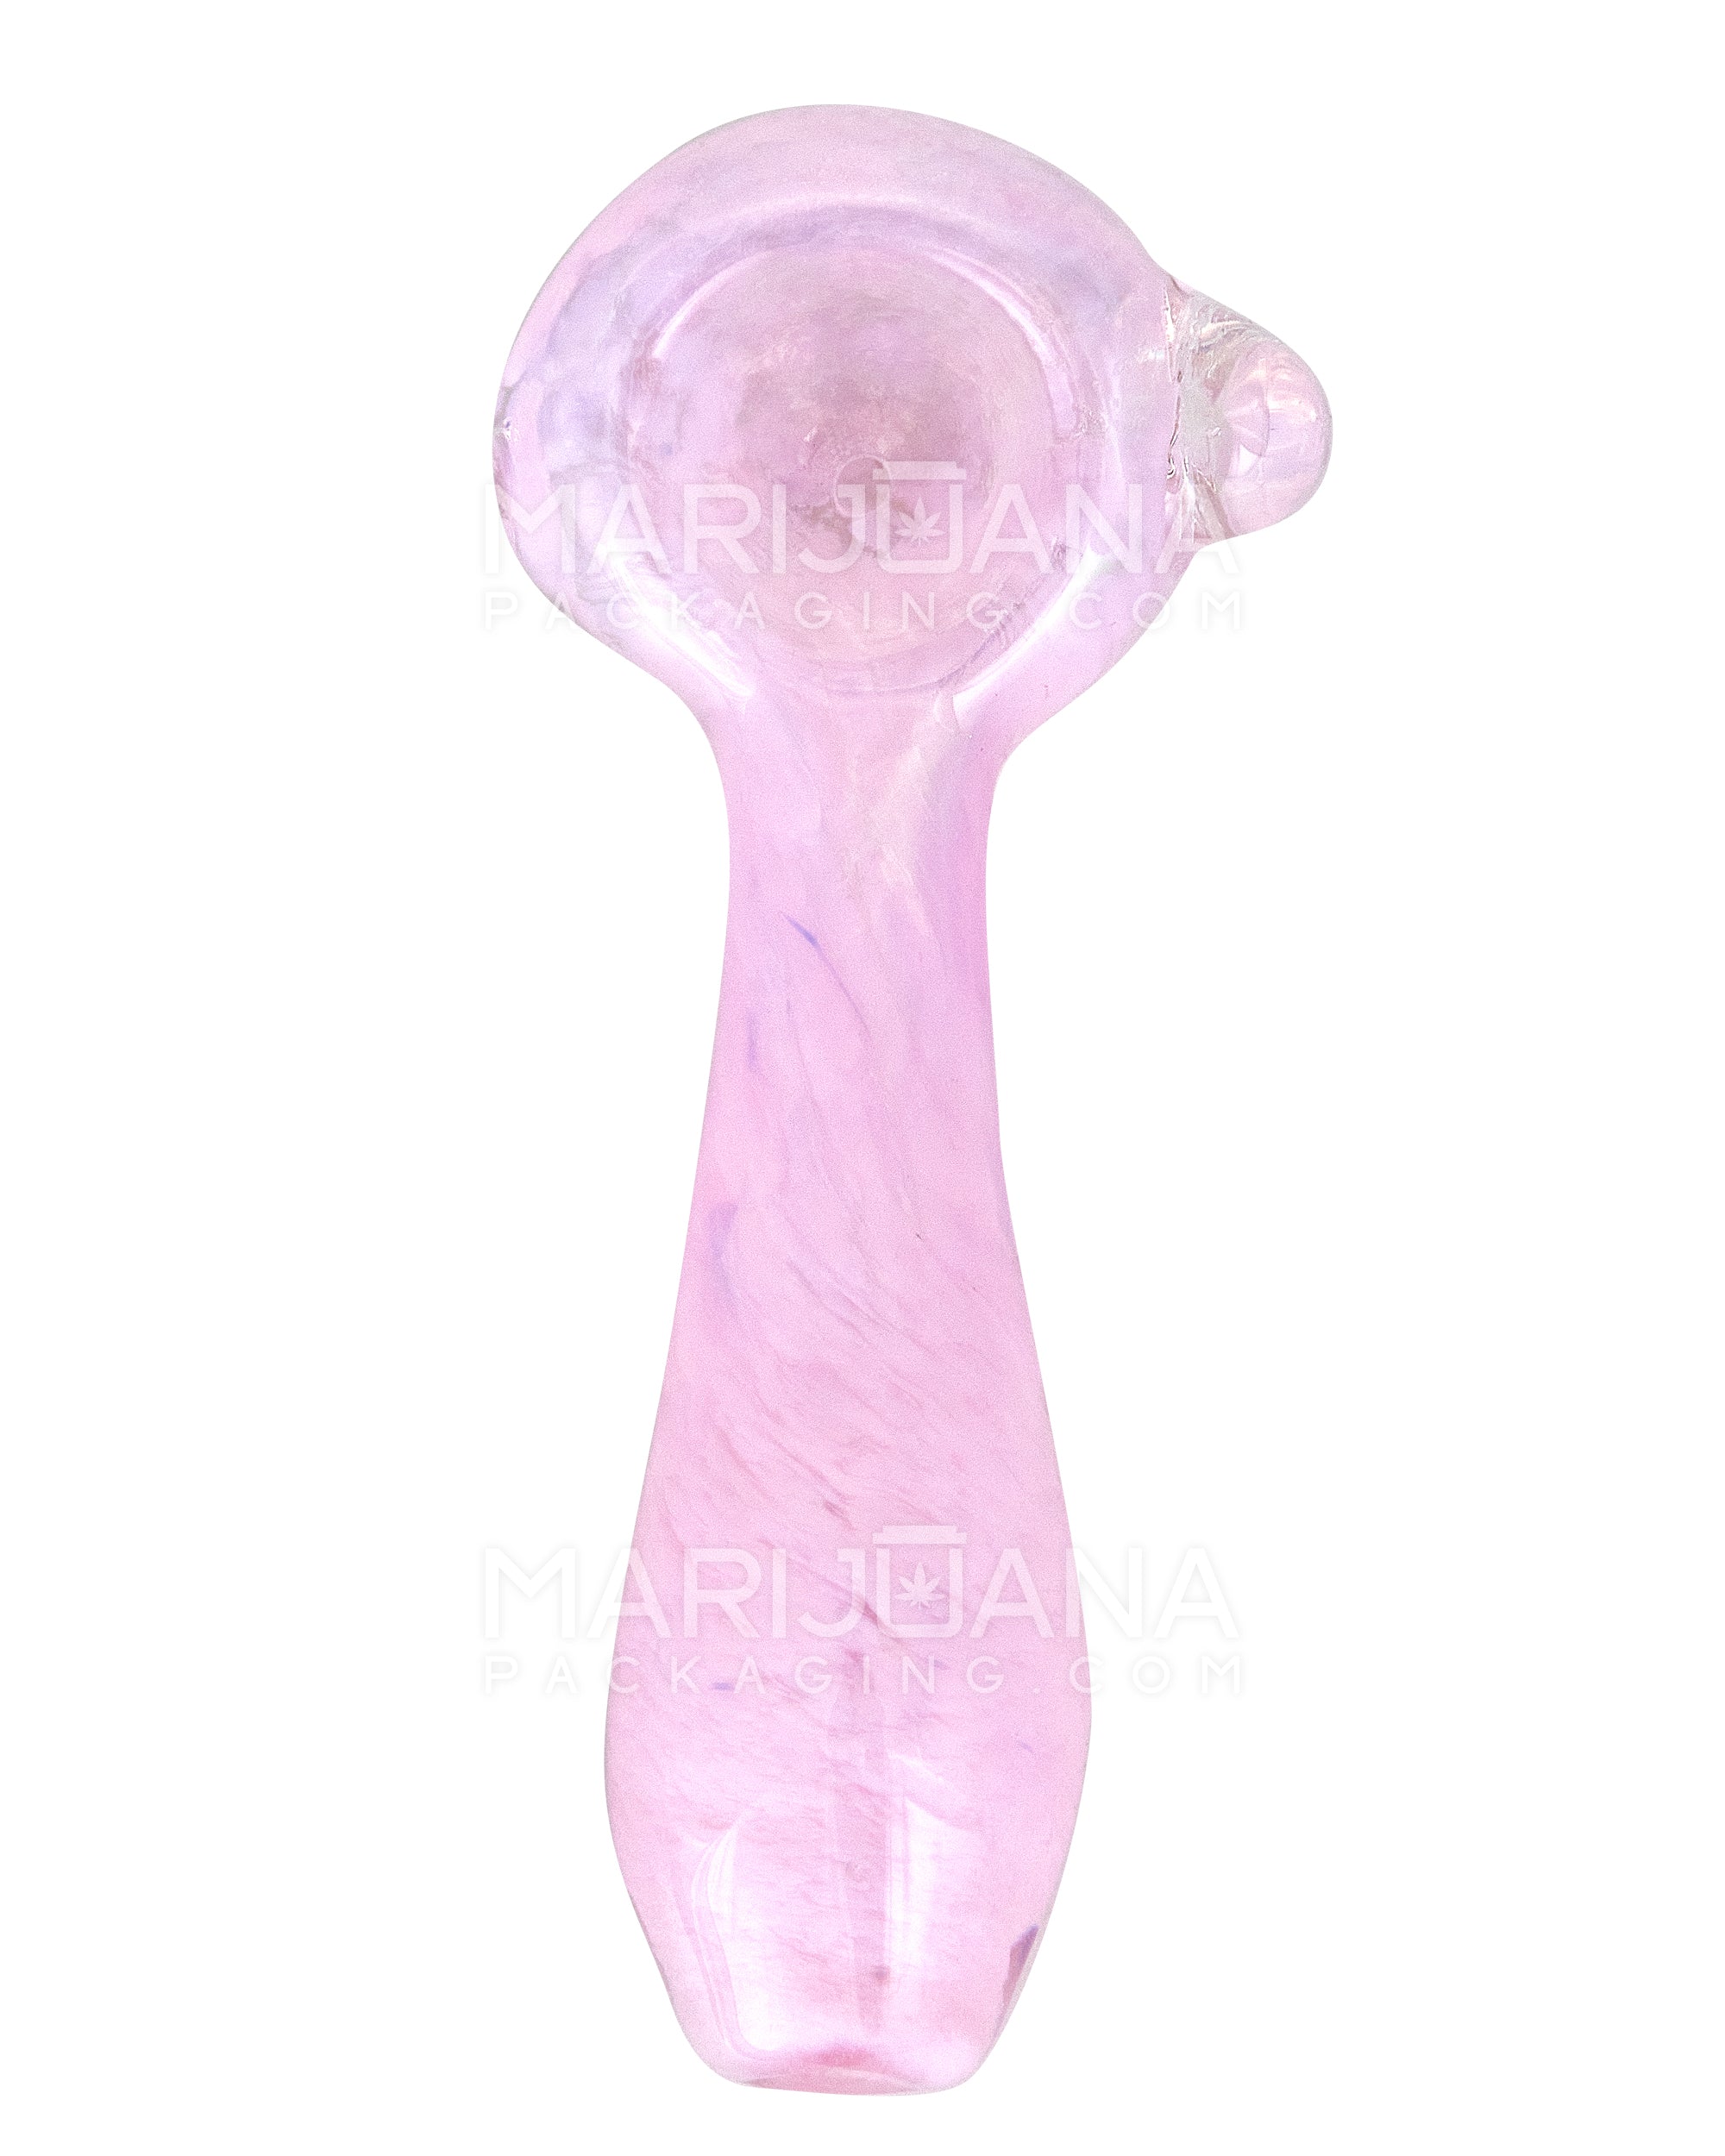 Frit Spoon Hand Pipe w/ Knocker | 4in Long - Glass - Milky Pink - 2